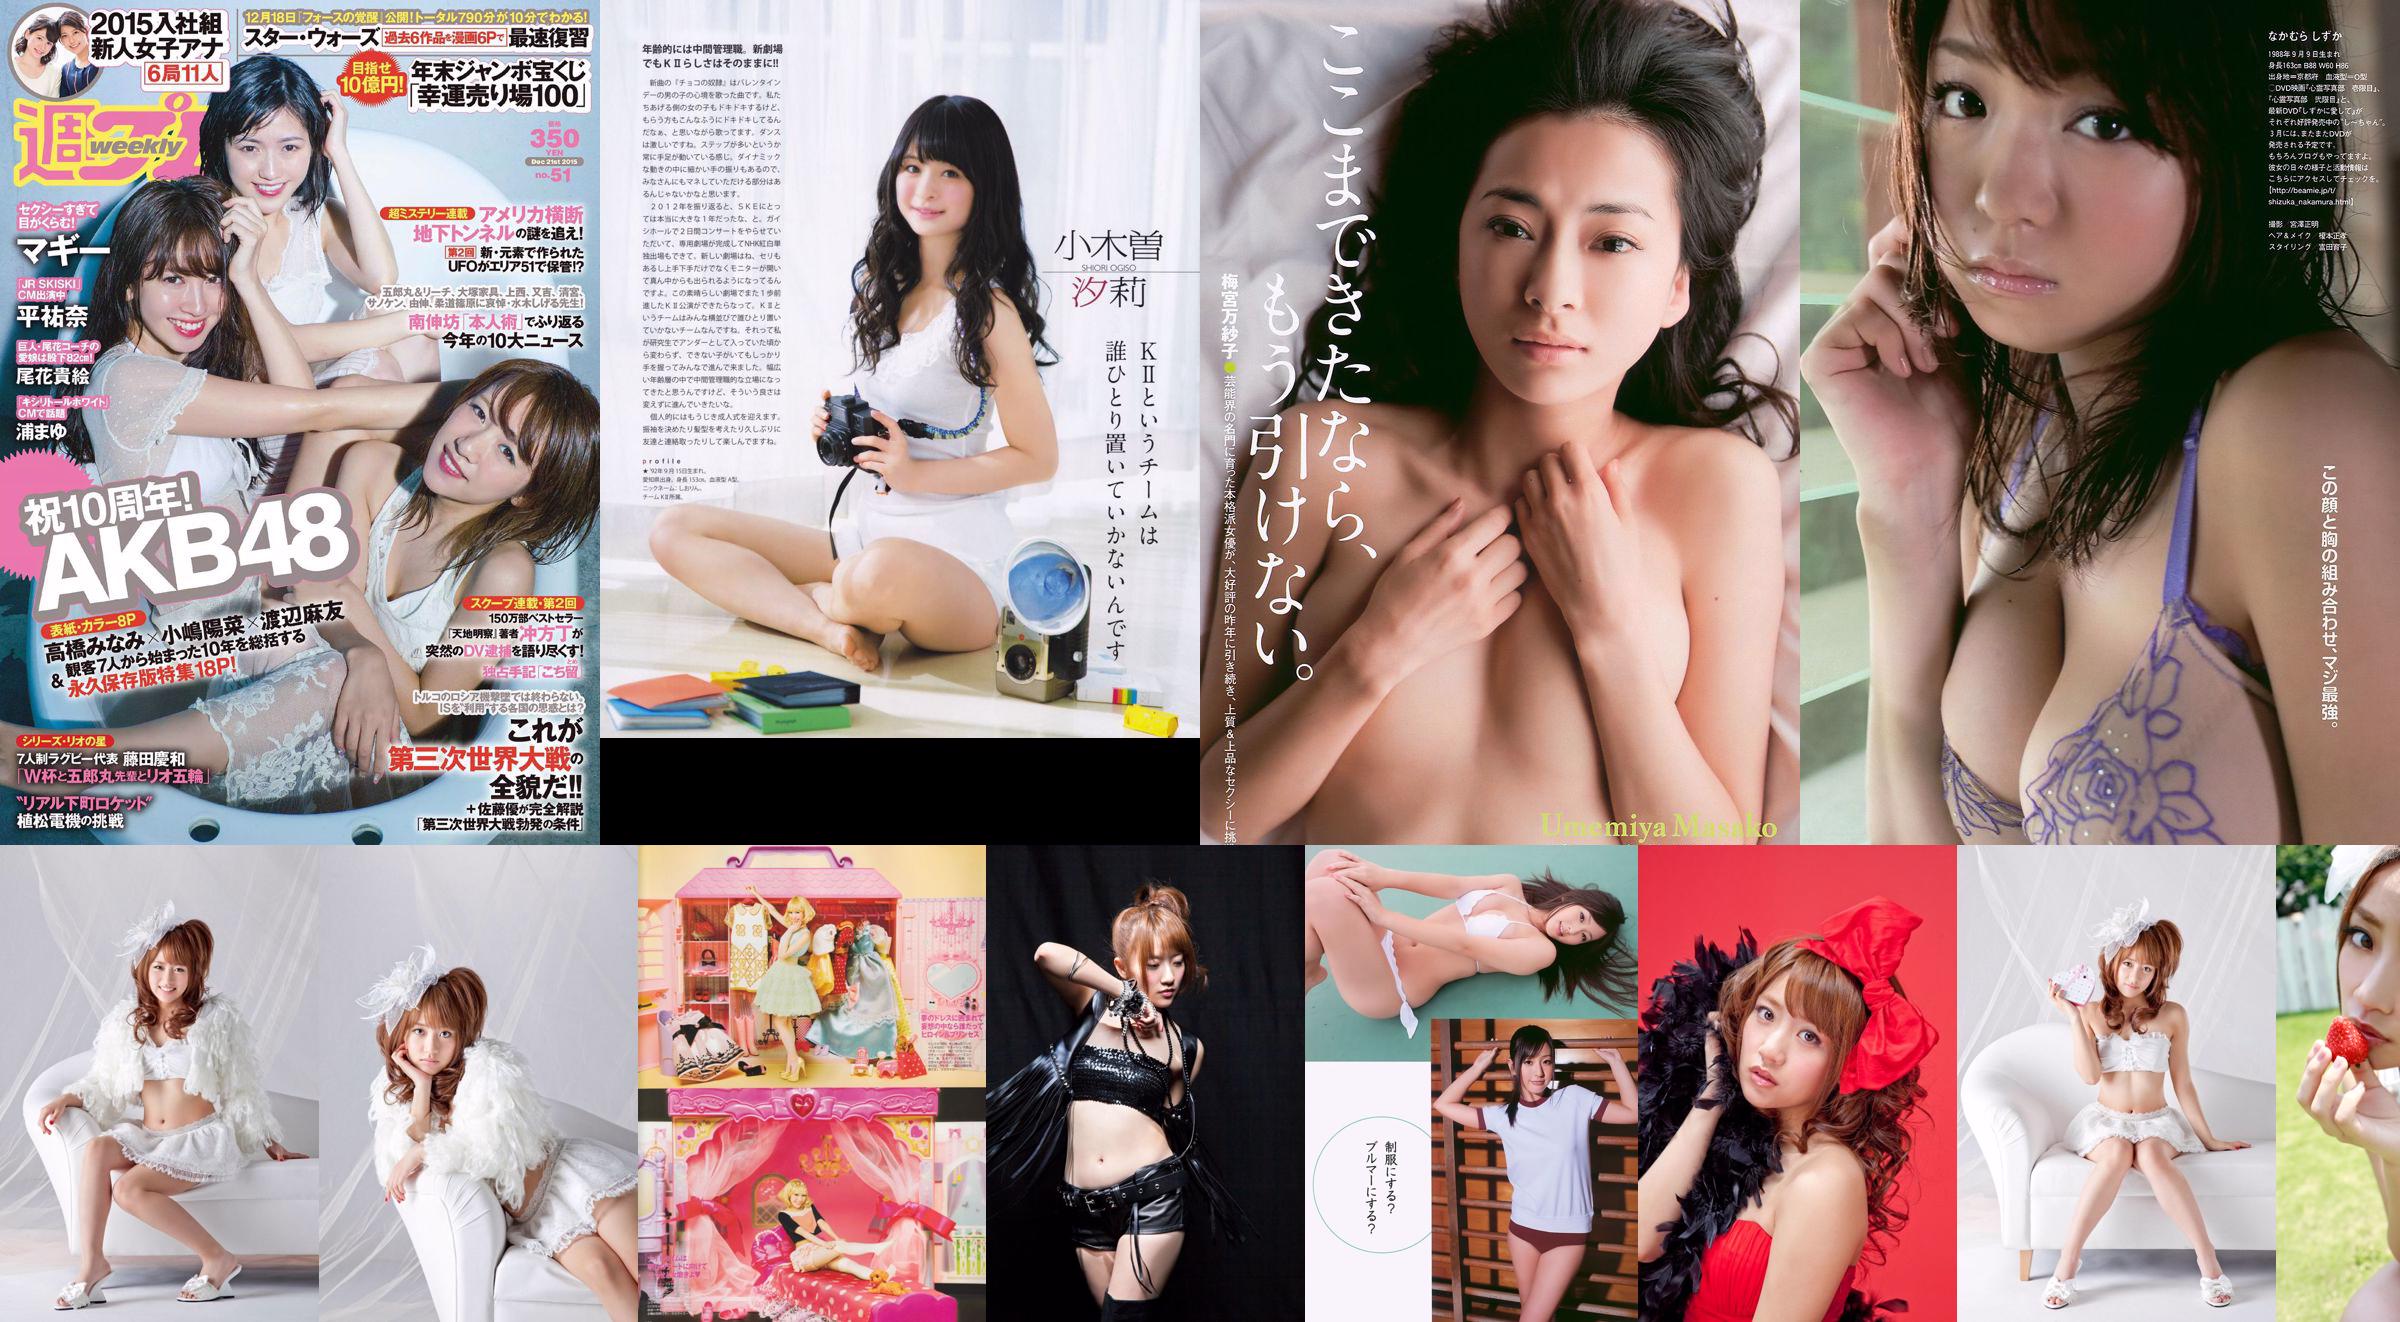 Minami Takahashi Haruna Kojima Mayu Watanabe Maggie Takae Obana Yuna Taira Mayu Ura Mitadera En [Weekly Playboy] 2015 Foto No 51 No.7c5953 Página 1